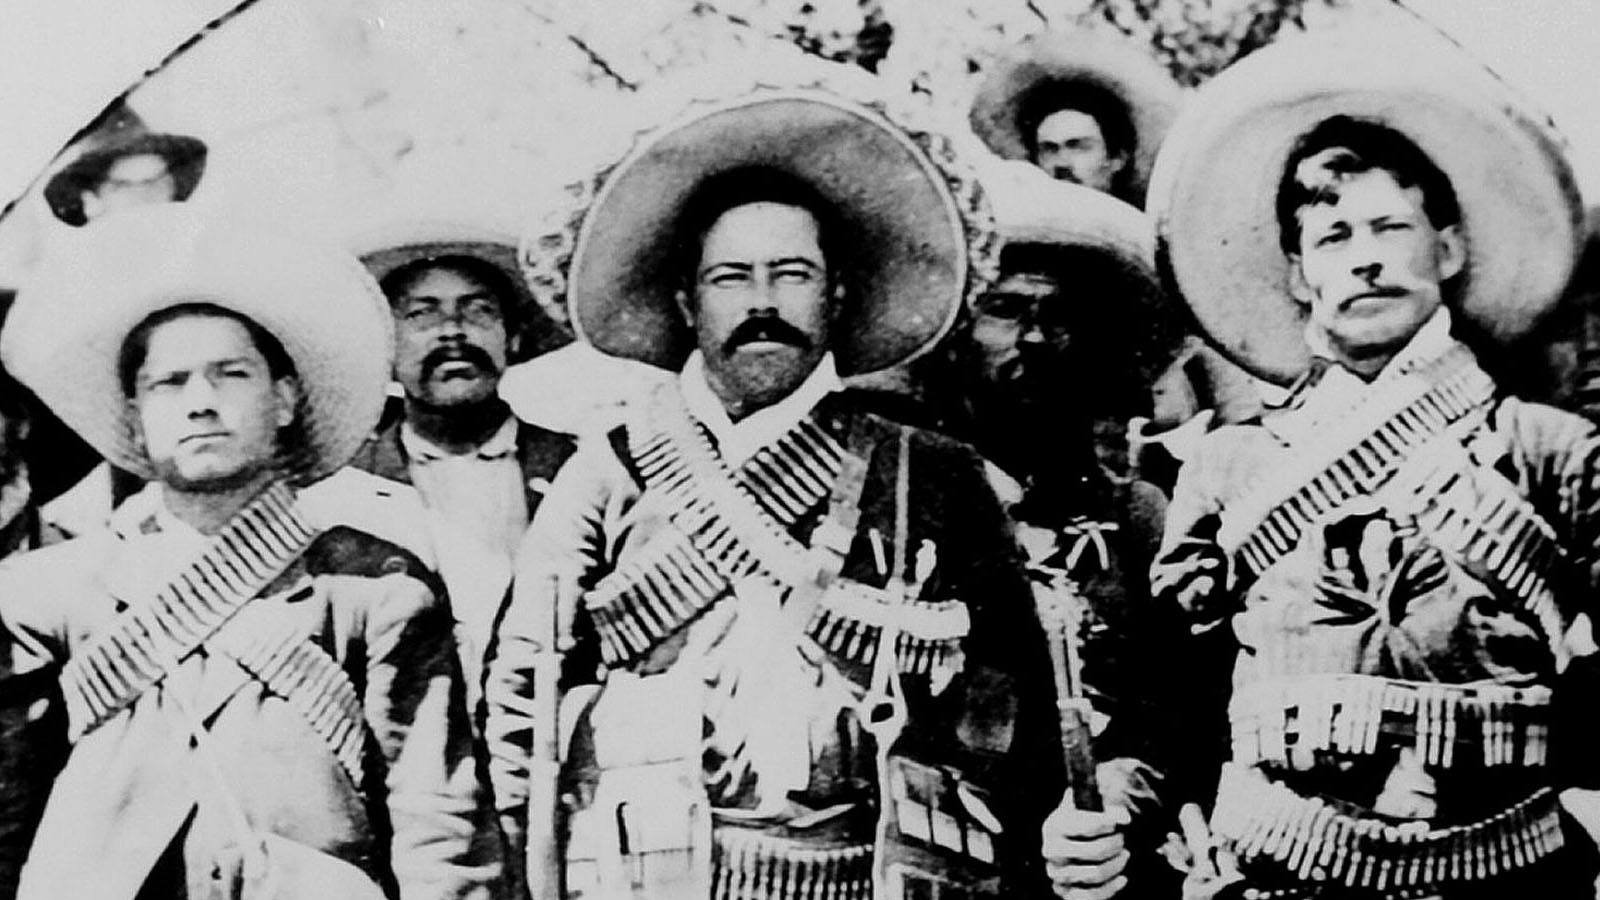 Revolución Mexicana